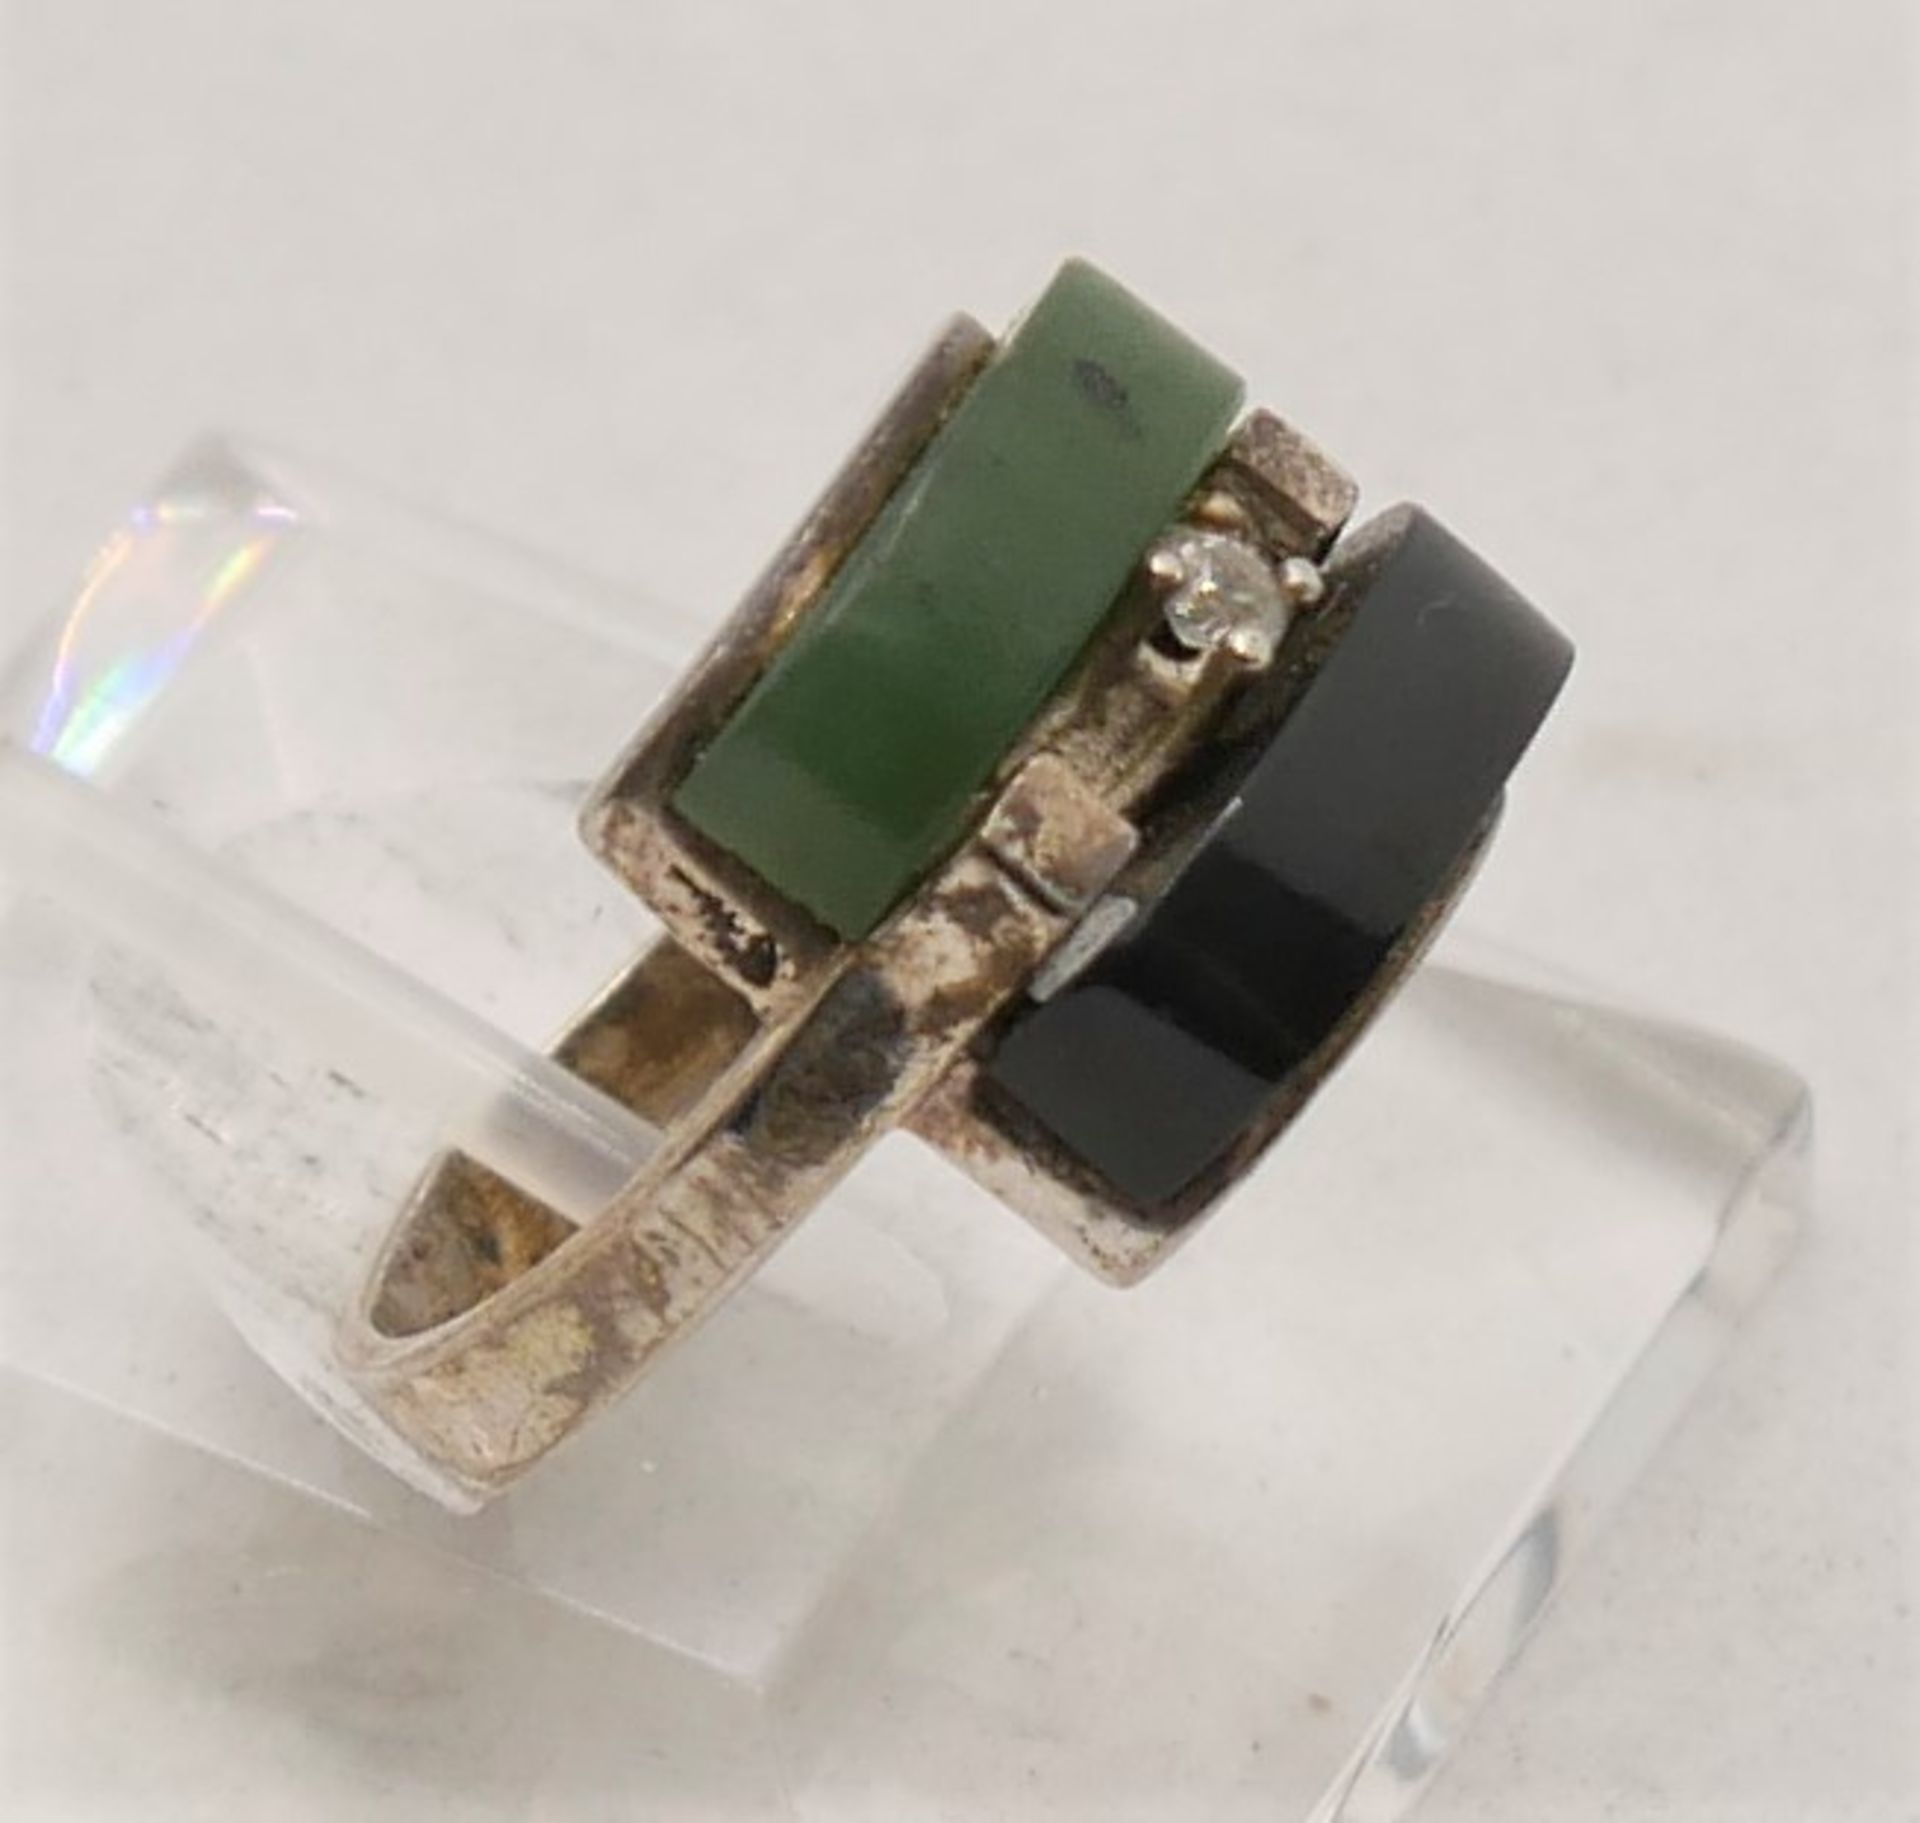 Damenring 925er Silber gepunzt mit schwarzem und grünem Halbedelstein, Ringgröße 52. - Image 2 of 2